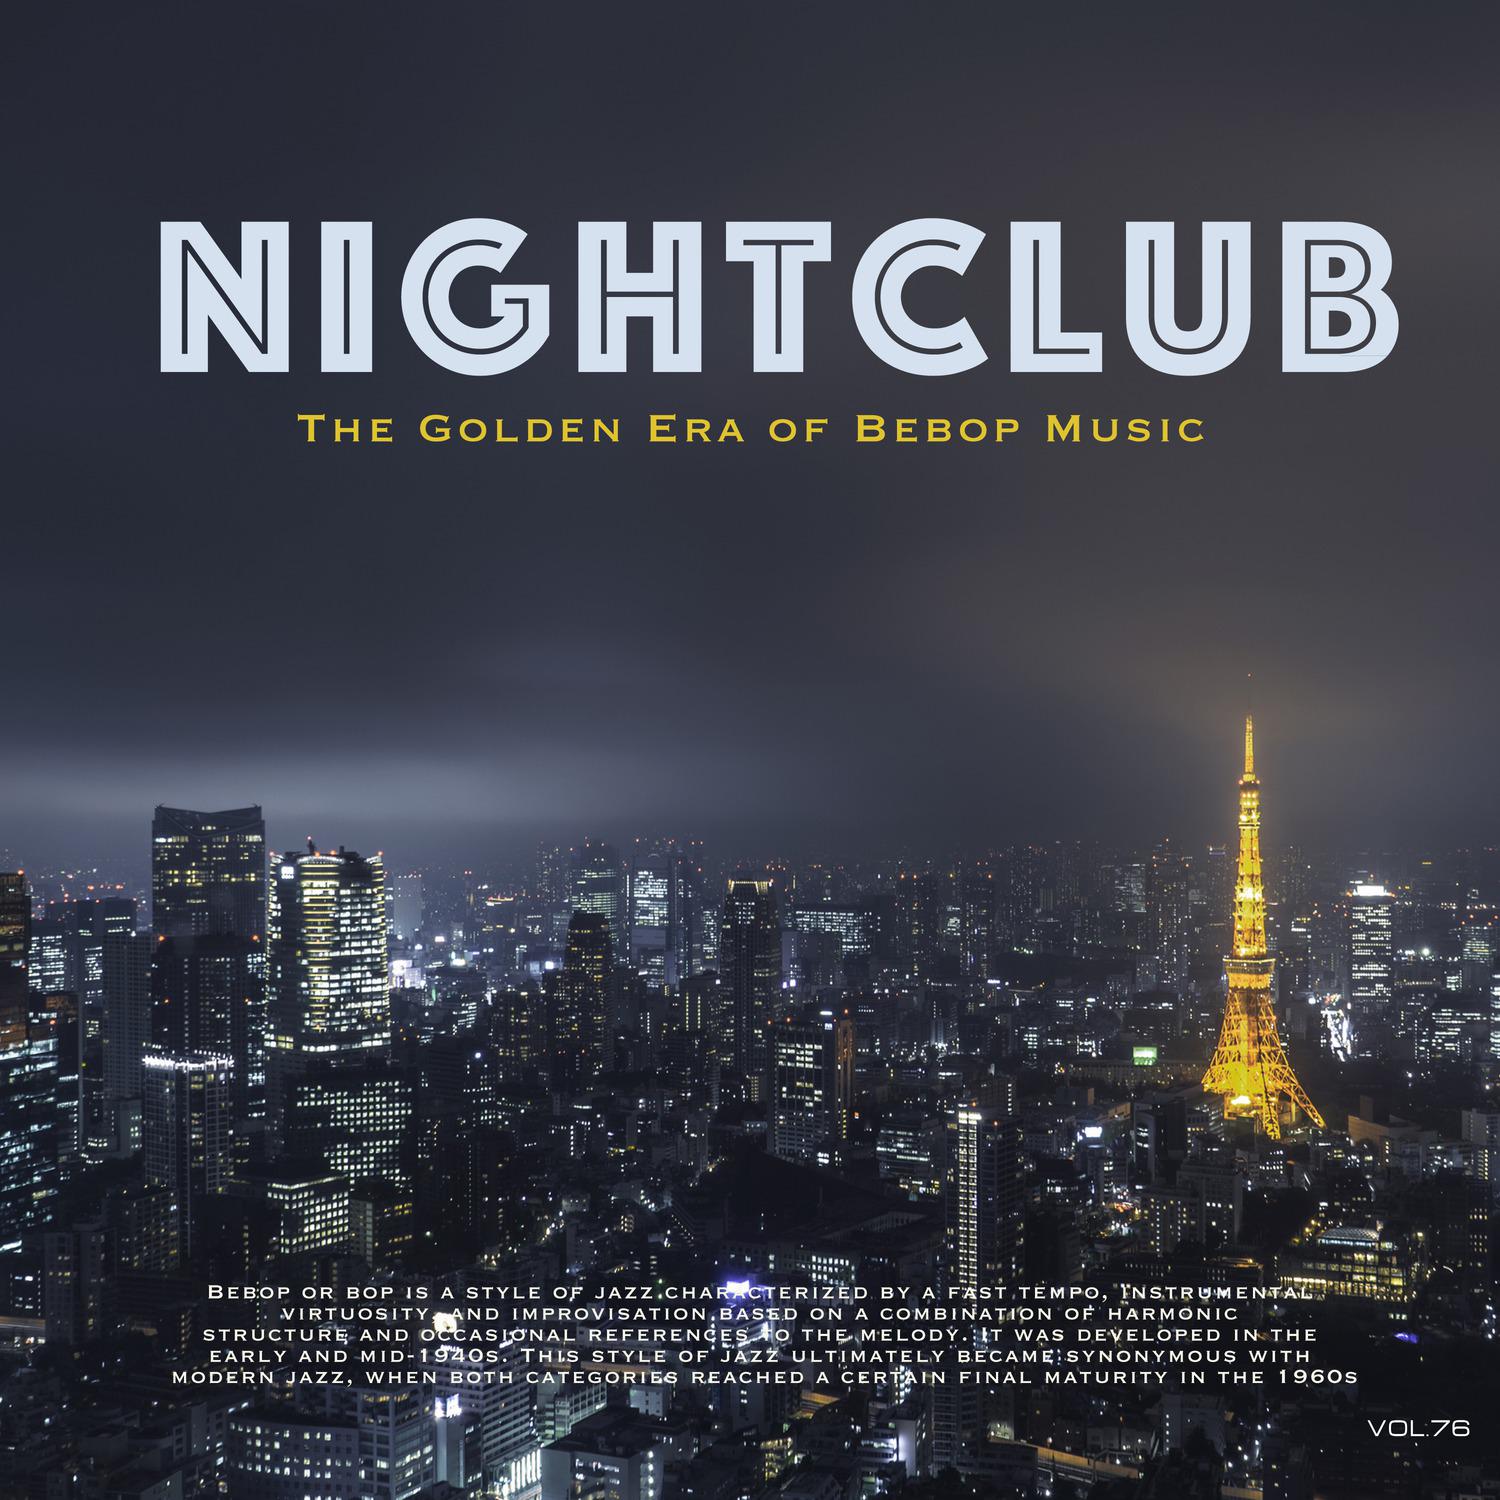 Nightclub, Vol. 76 (The Golden Era of Bebop Music)